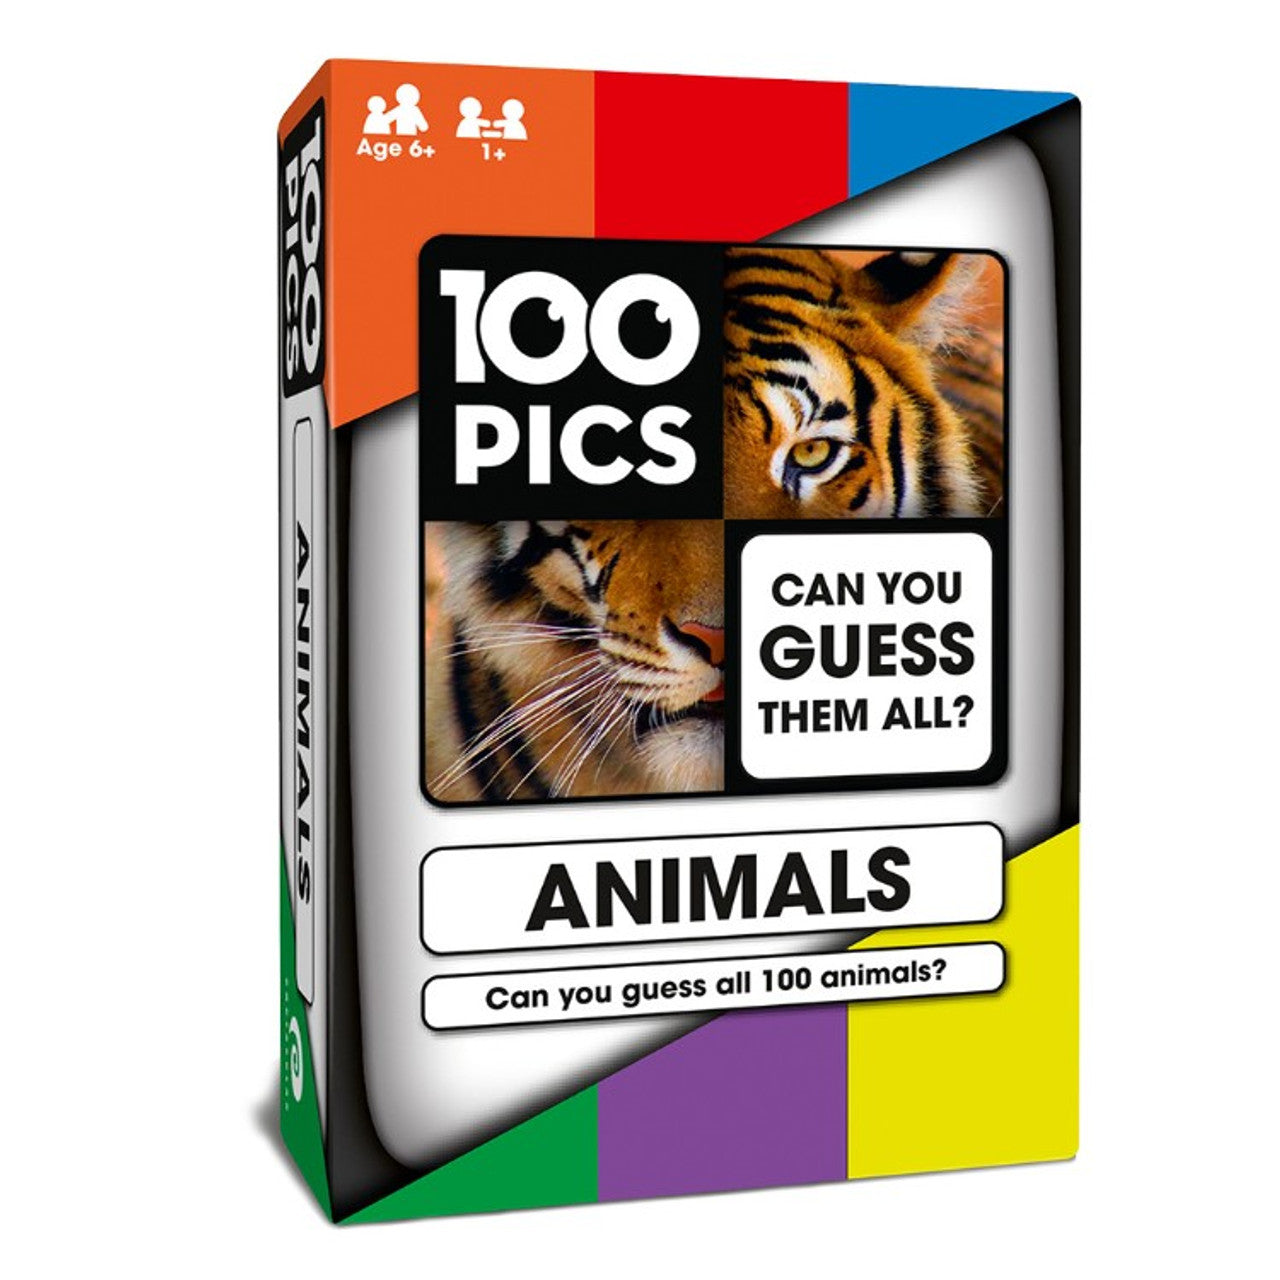 100 Pics:Animals